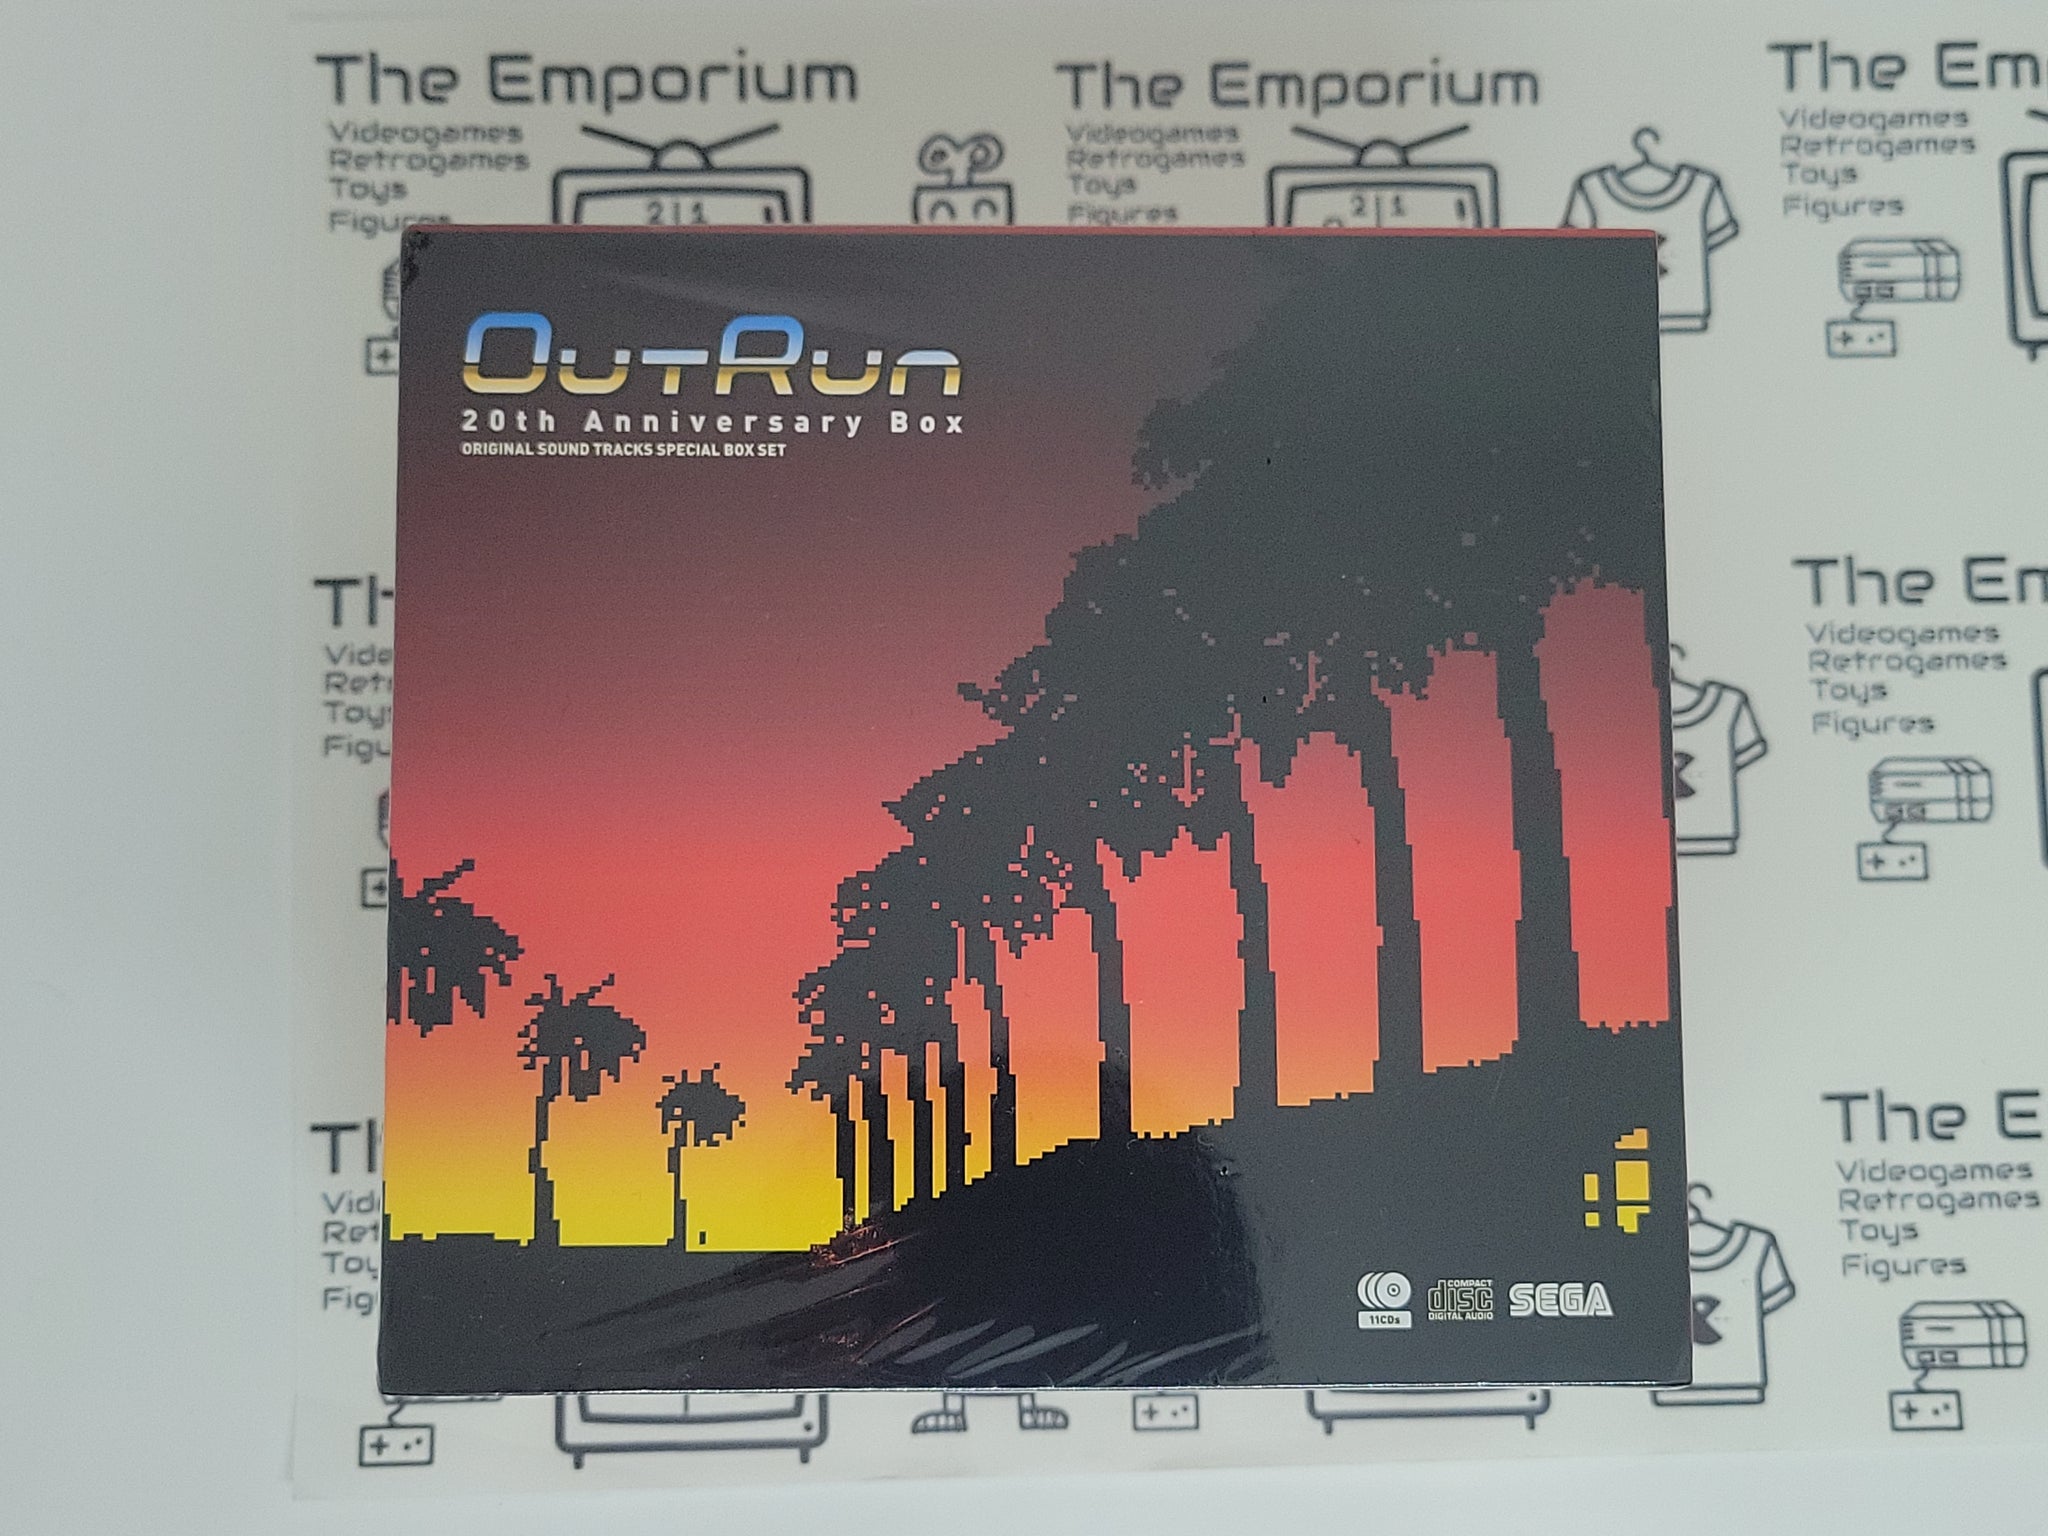 OutRun 20th Anniversary Box, OutRun ORIGINAL SOUND TRACKS SPECIAL BOX SET -  Music cd soundtrack